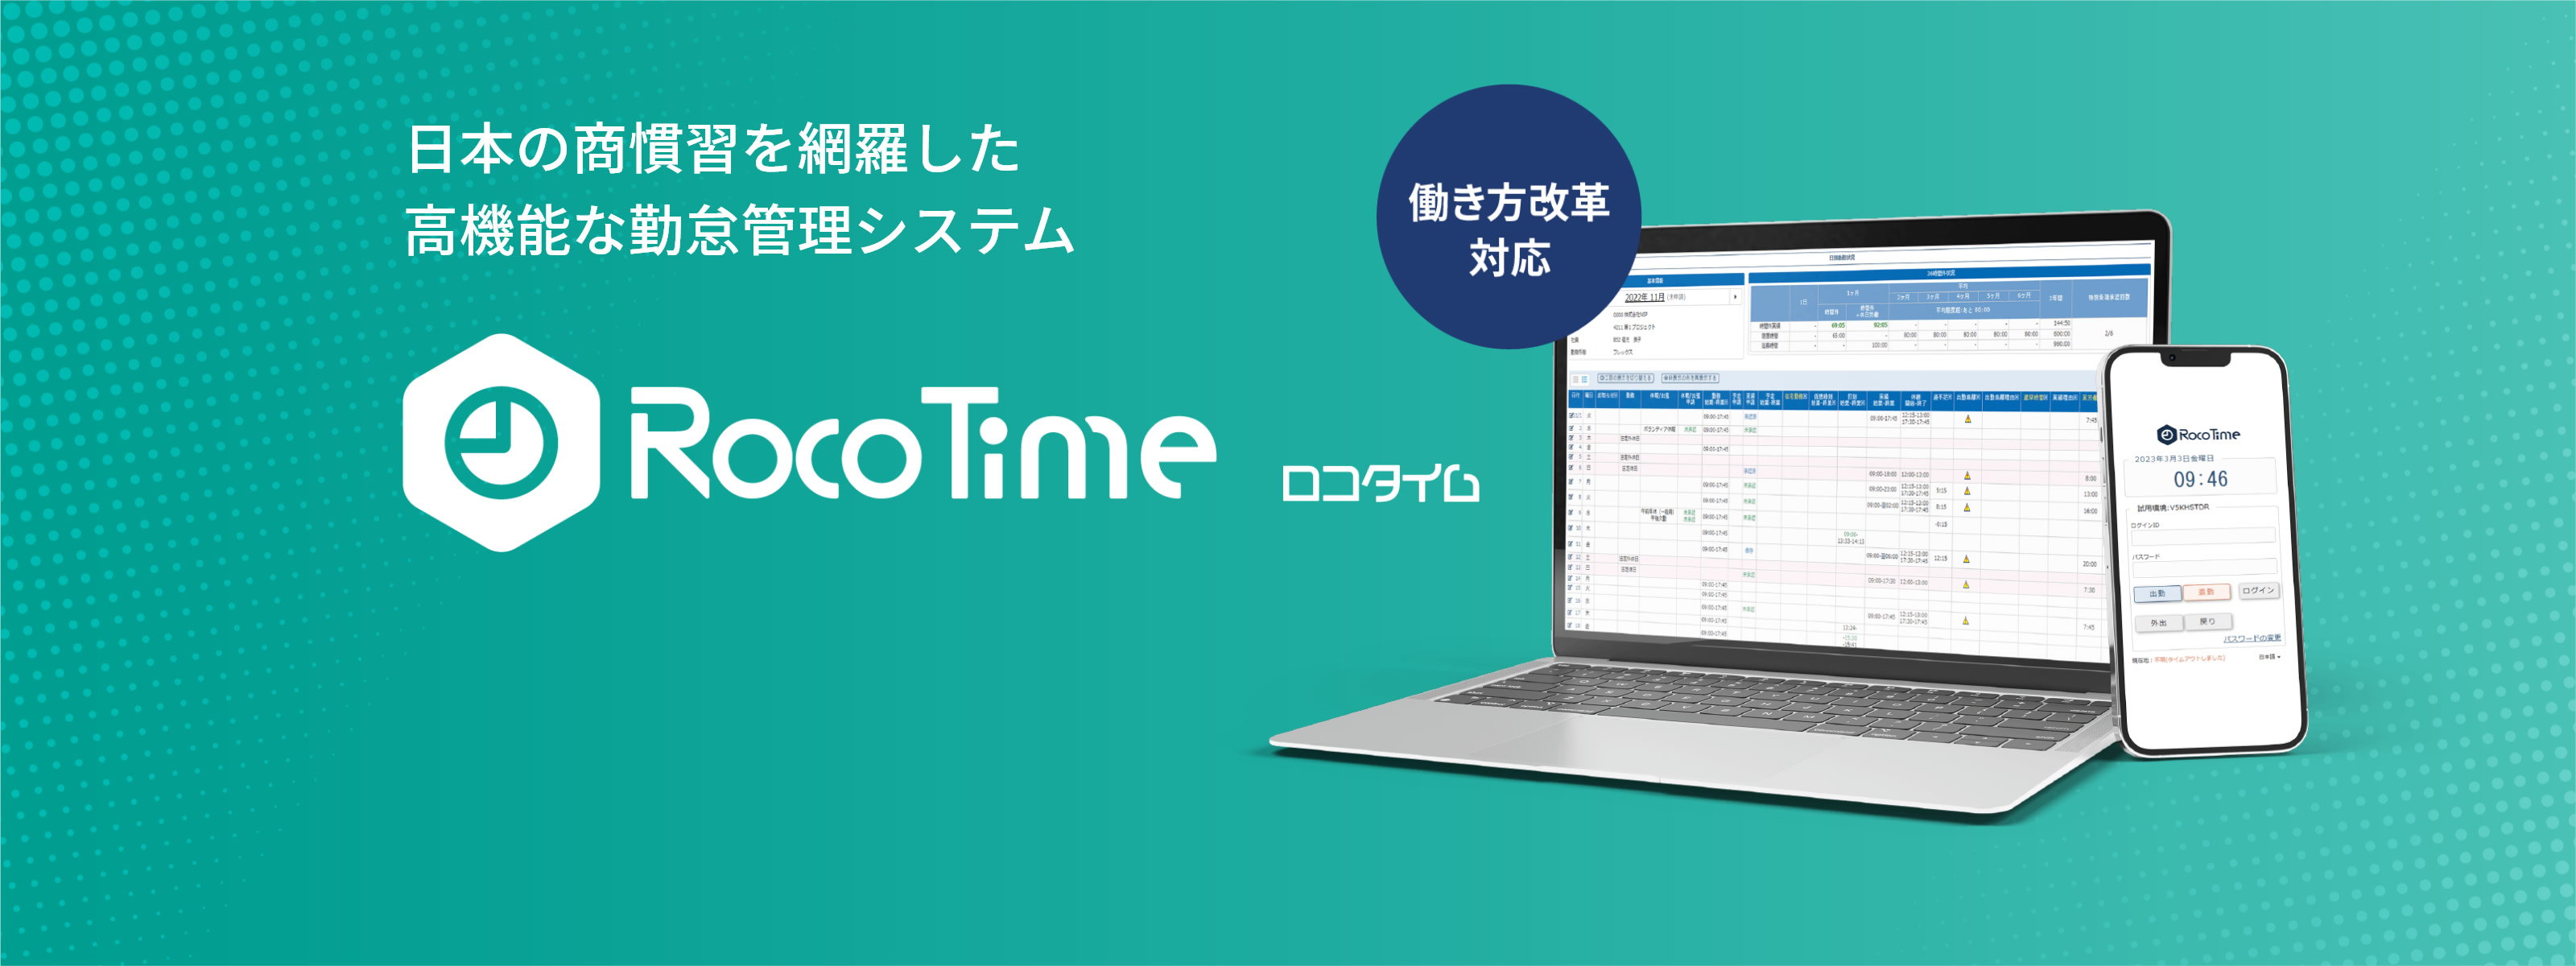 日本の商習慣を網羅した高機能な勤怠管理システム「RocoTime-ロコタイム-」